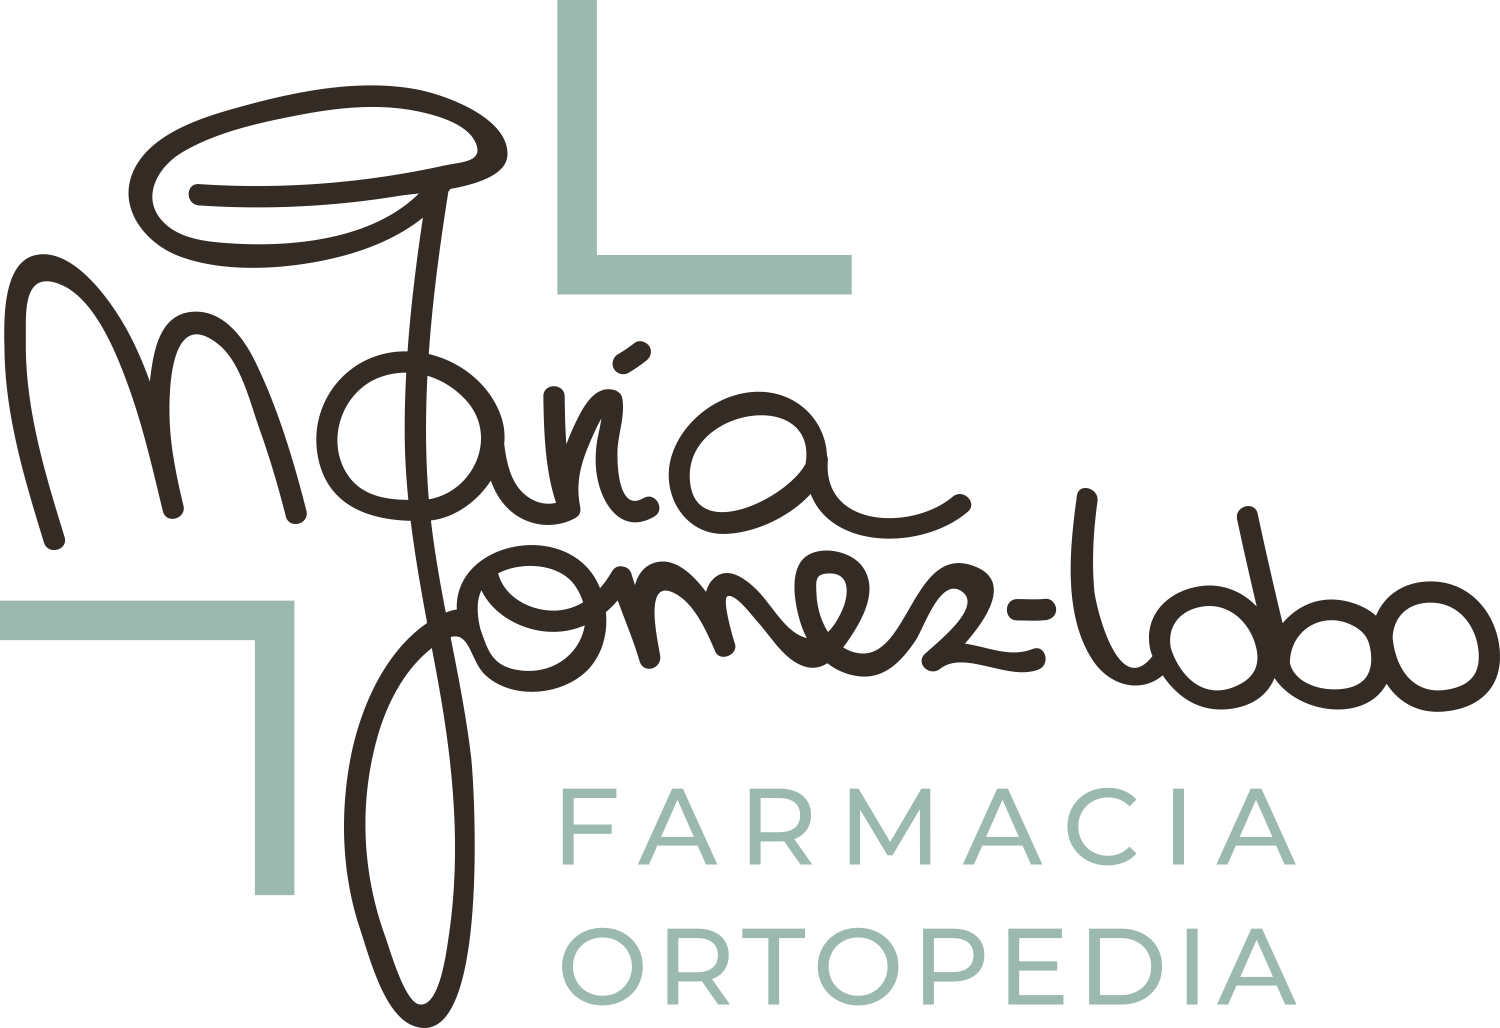 Farmacia María Gómez Lobo